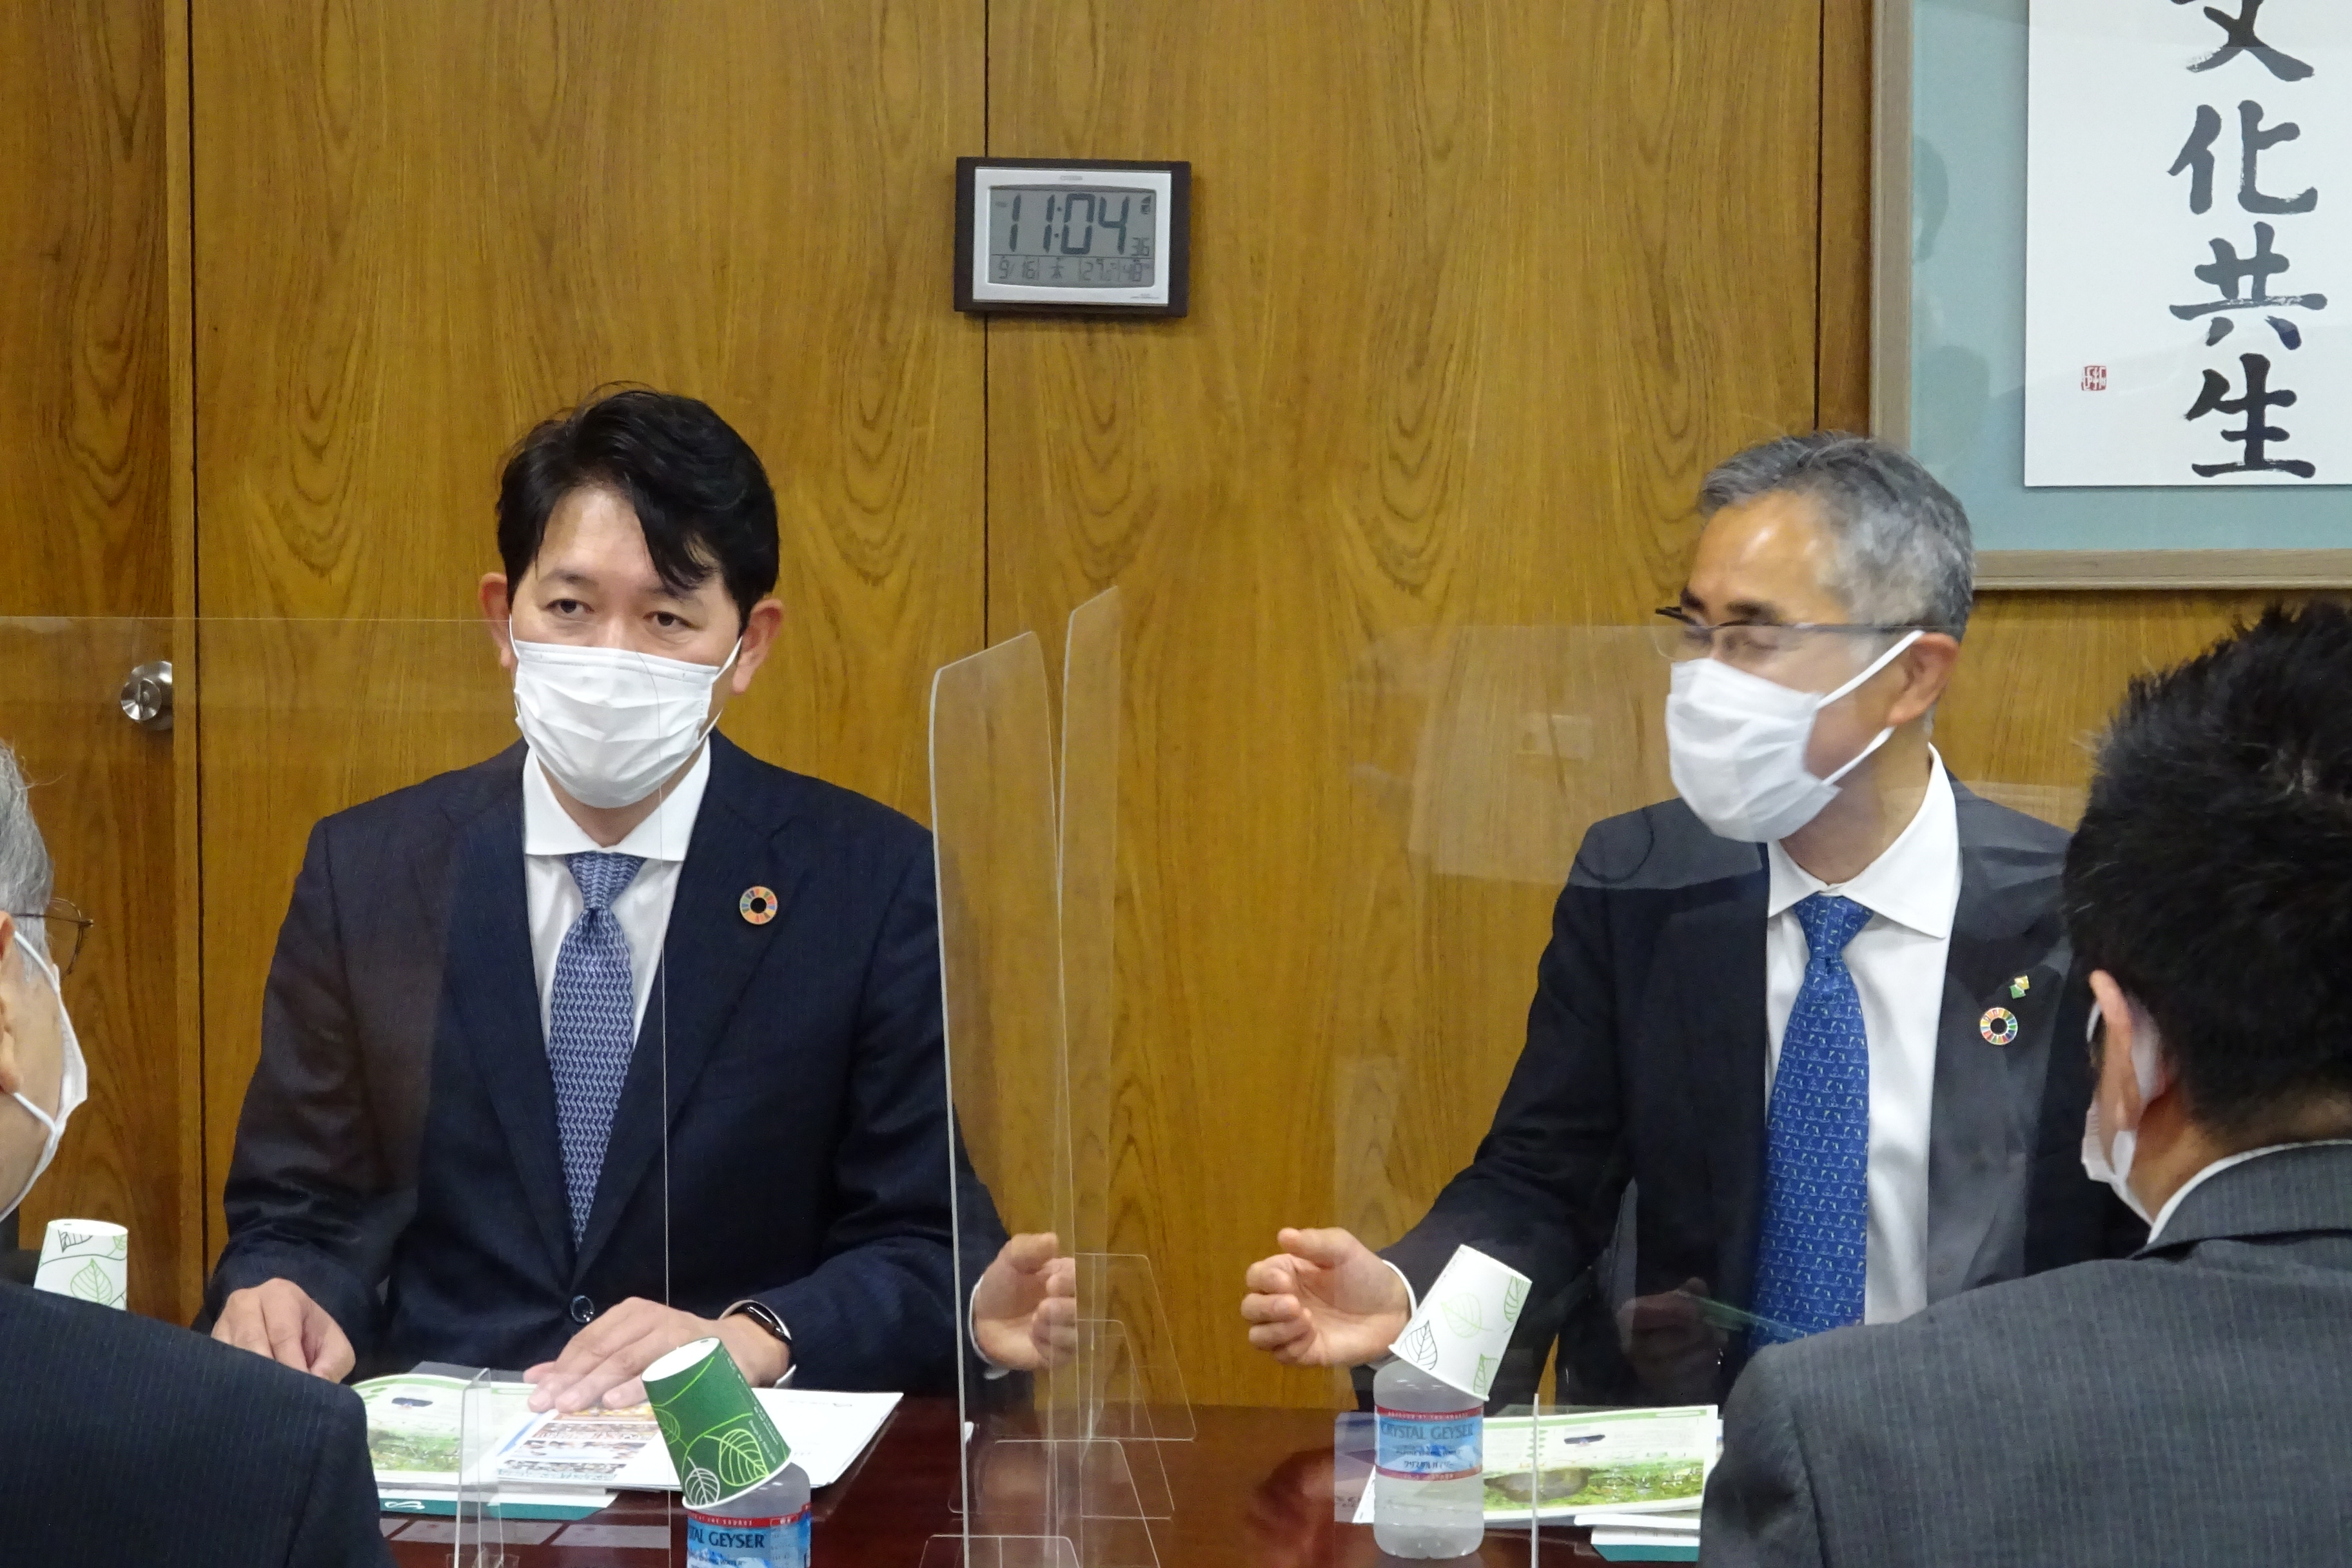 懇談する櫻井社長（左）と日野取締役の画像